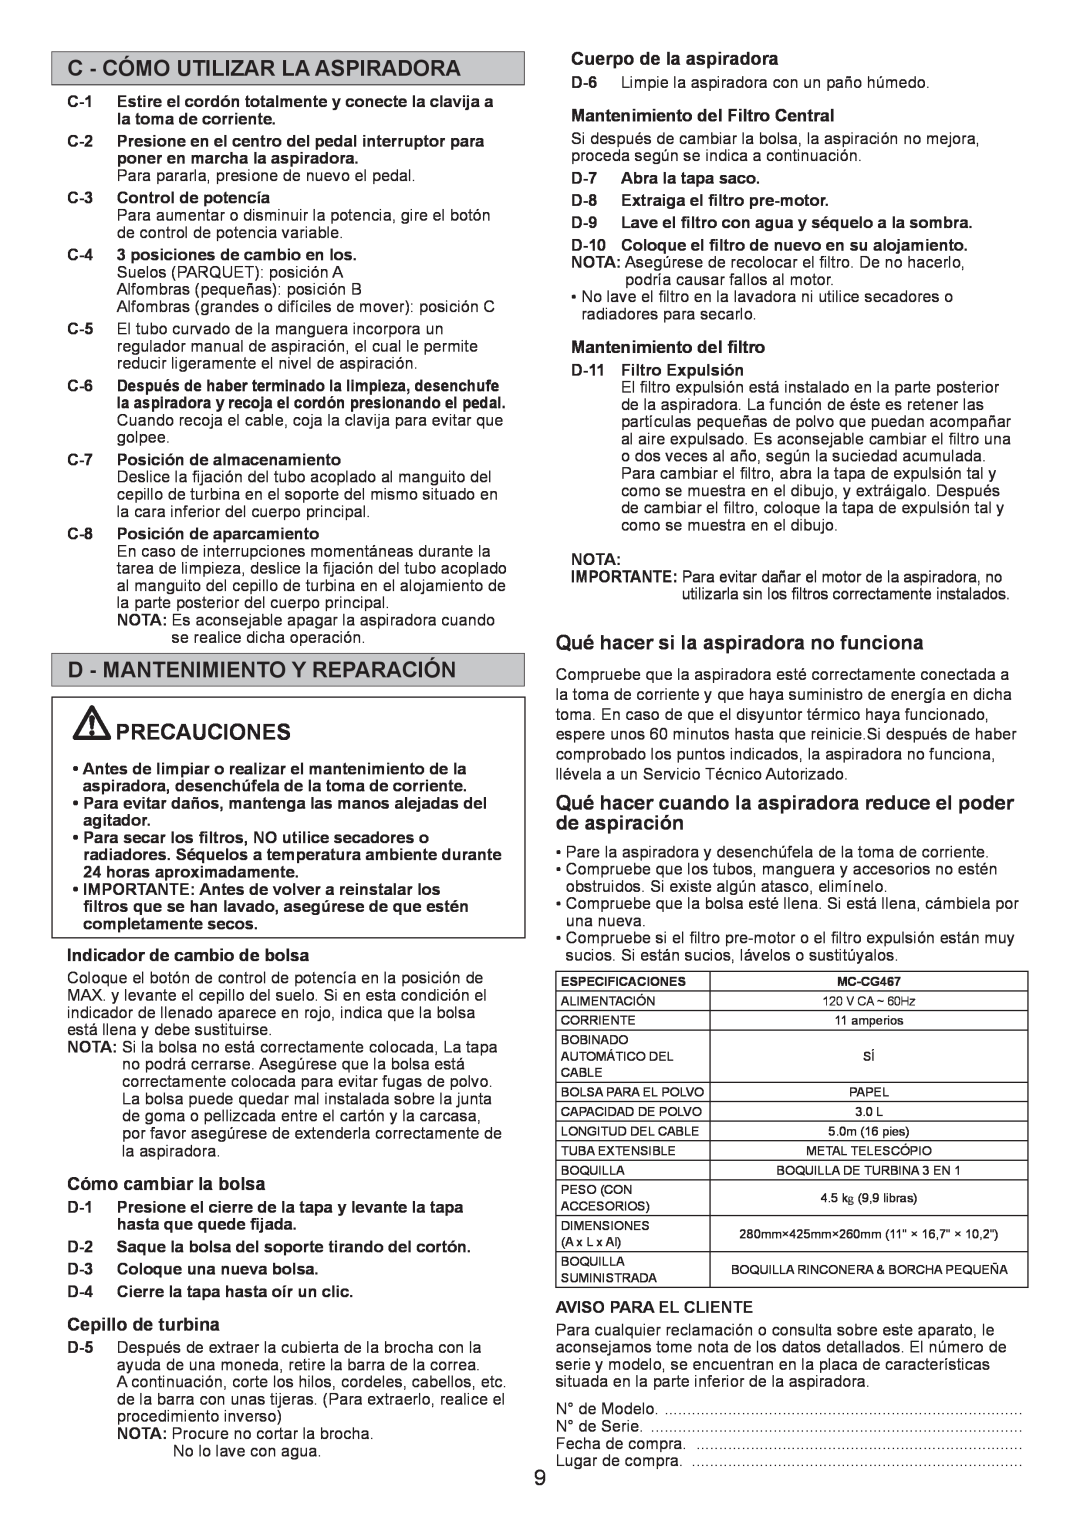 Panasonic MC-CG467 C - Cómo Utilizar La Aspiradora, D - Mantenimiento Y Reparación Precauciones, Cómo cambiar la bolsa 